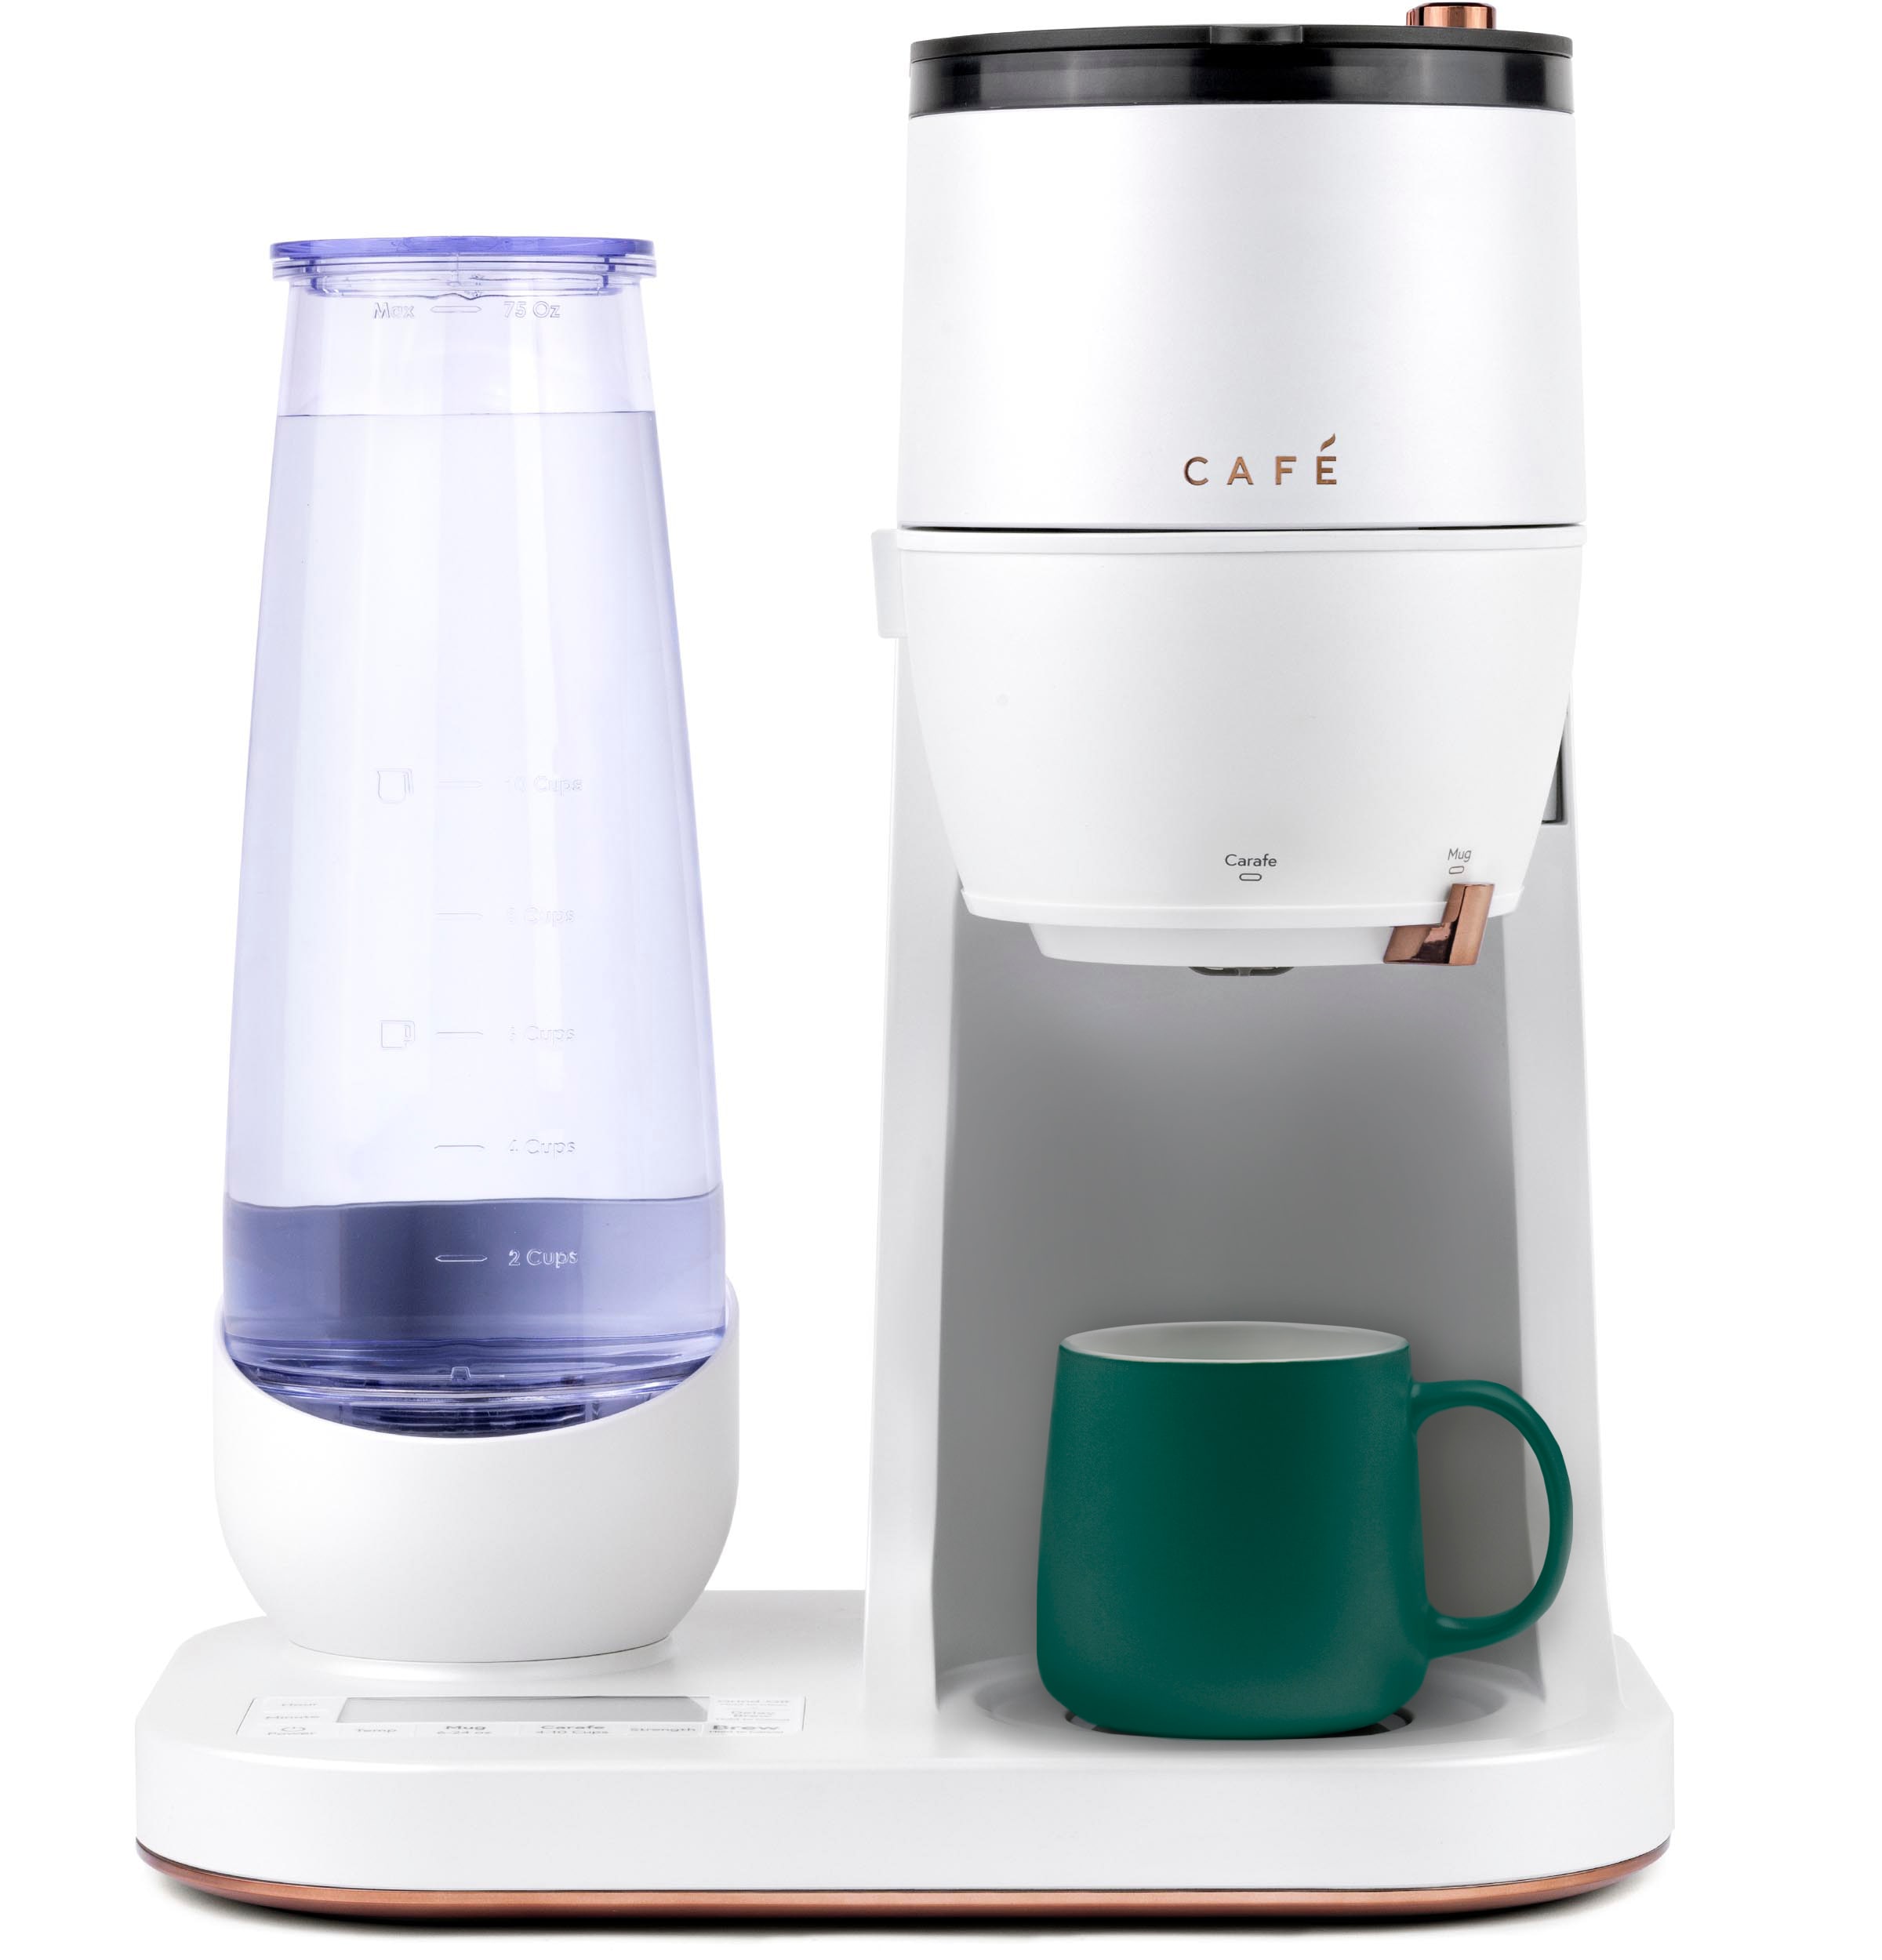 Set of 4 Clear Glass Café Mug Set 16 oz Coffee Cups with Handle